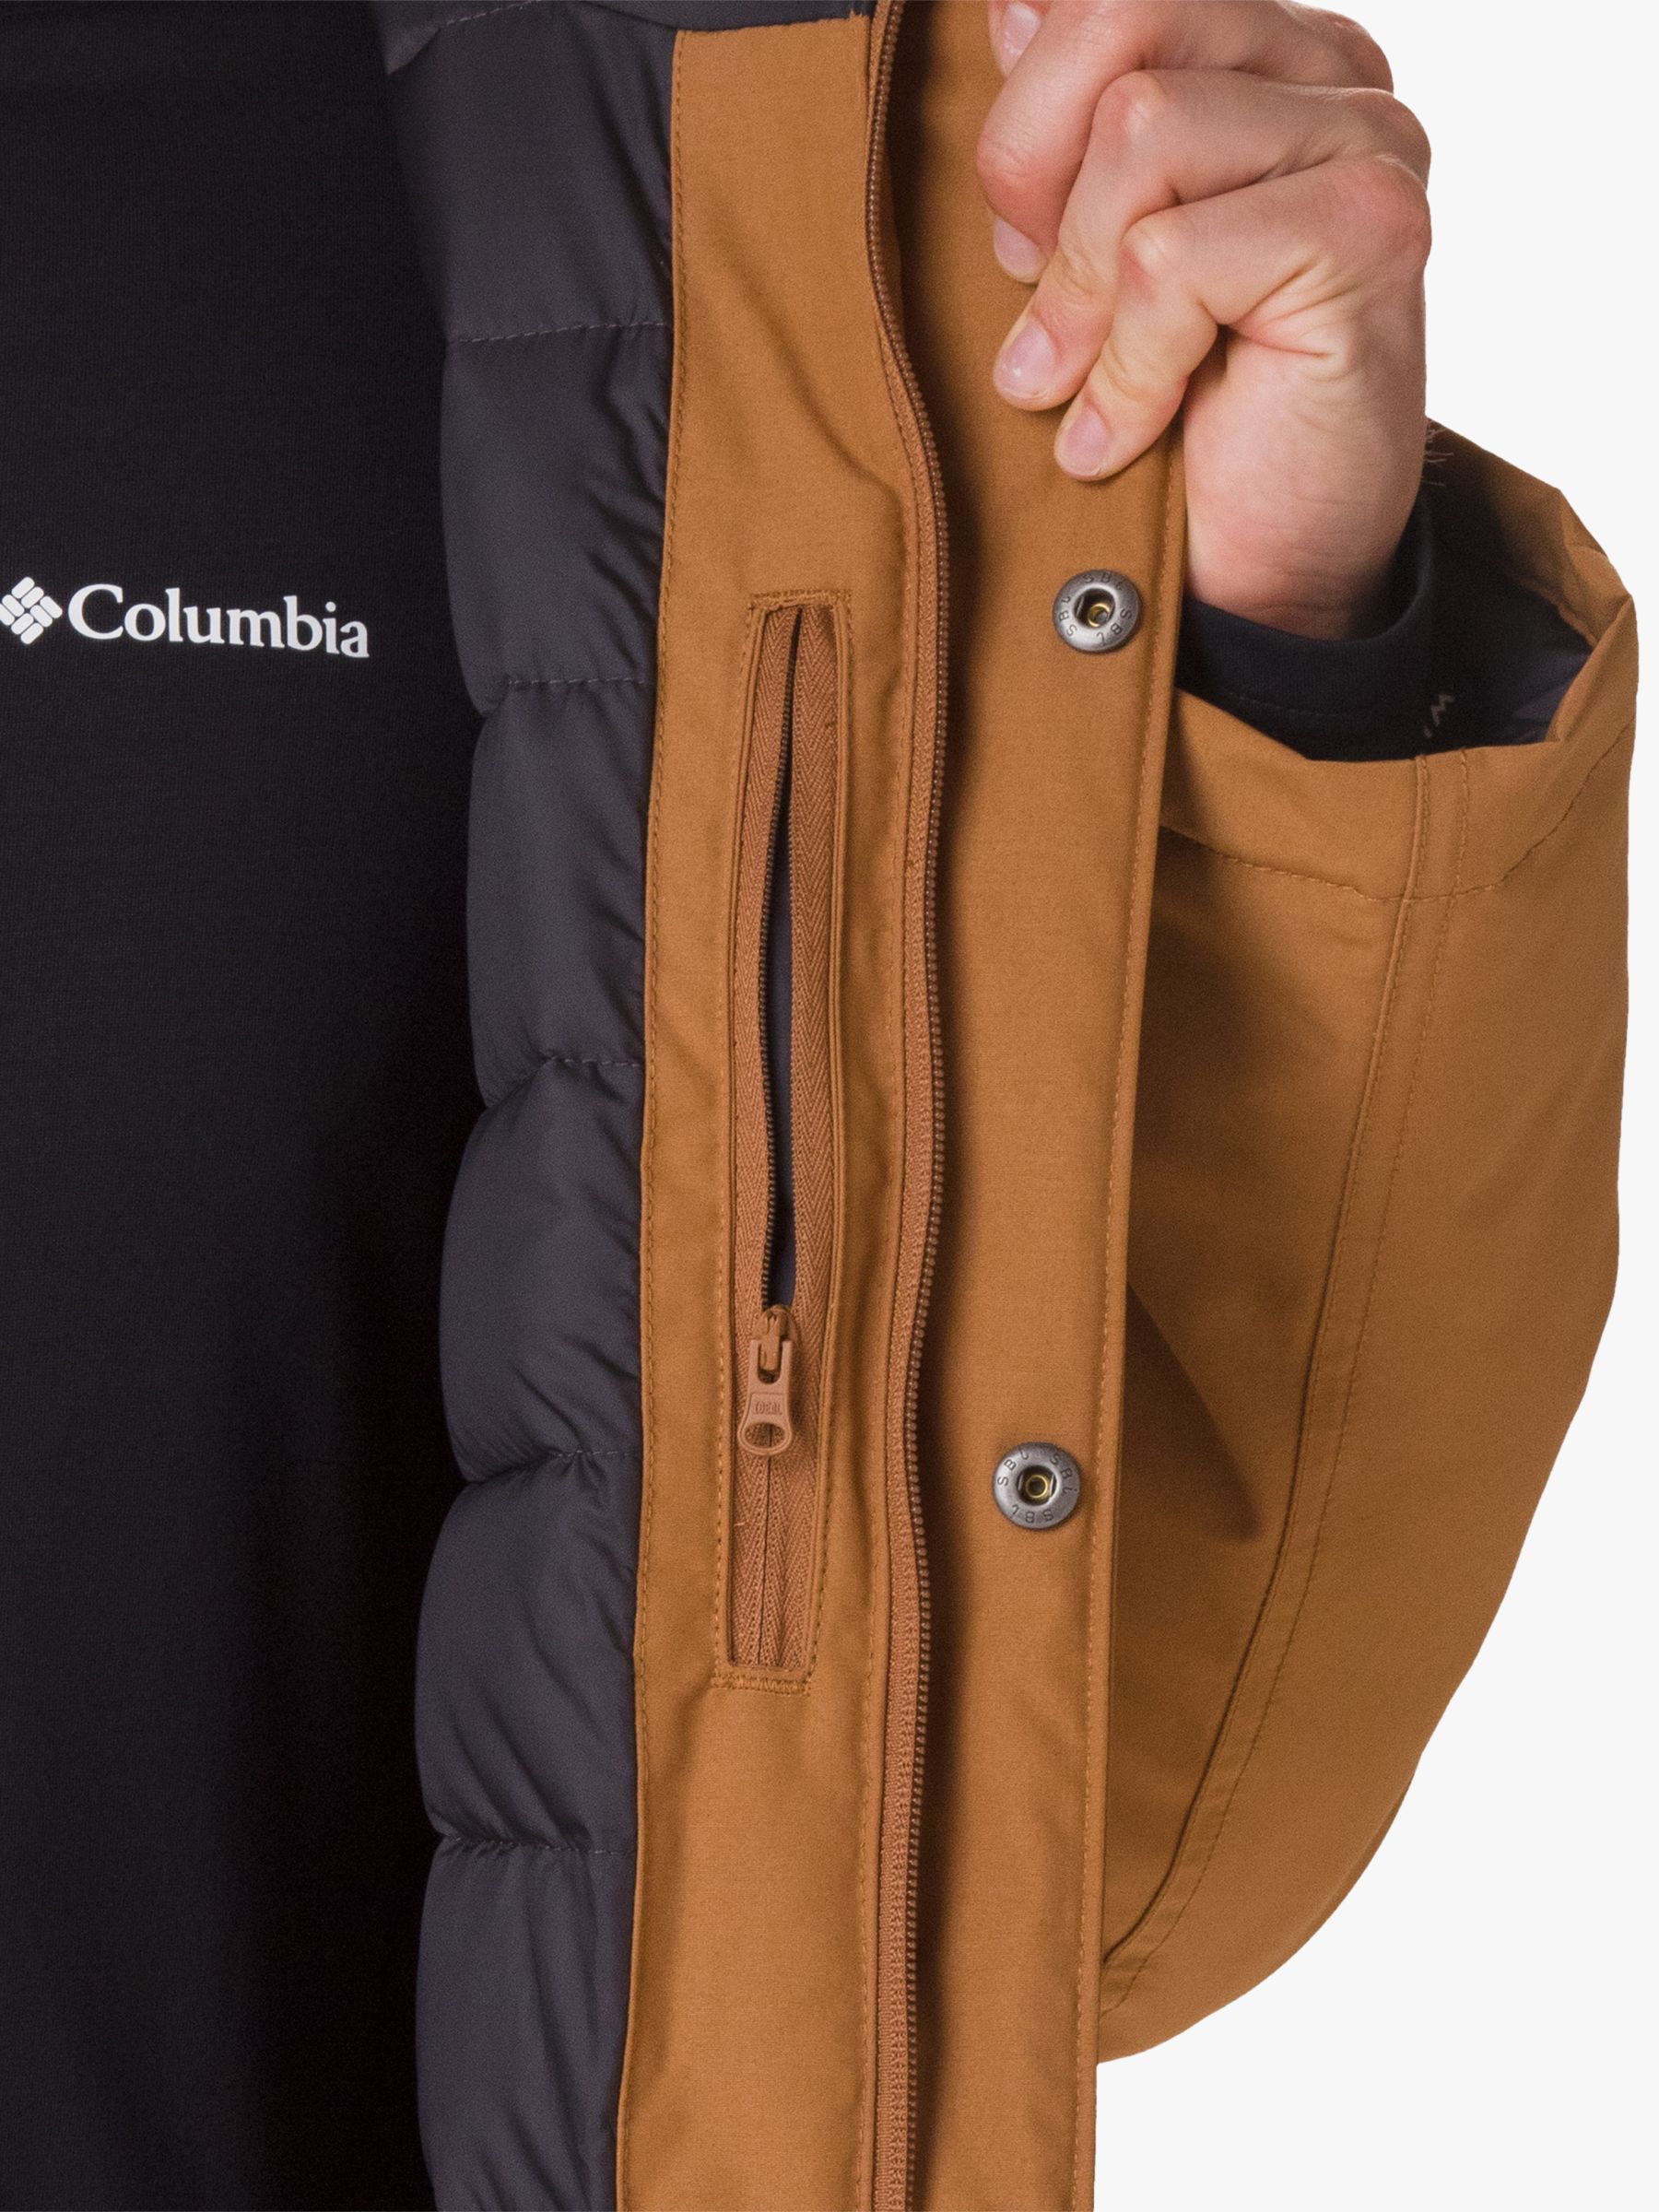 brown columbia jacket men's